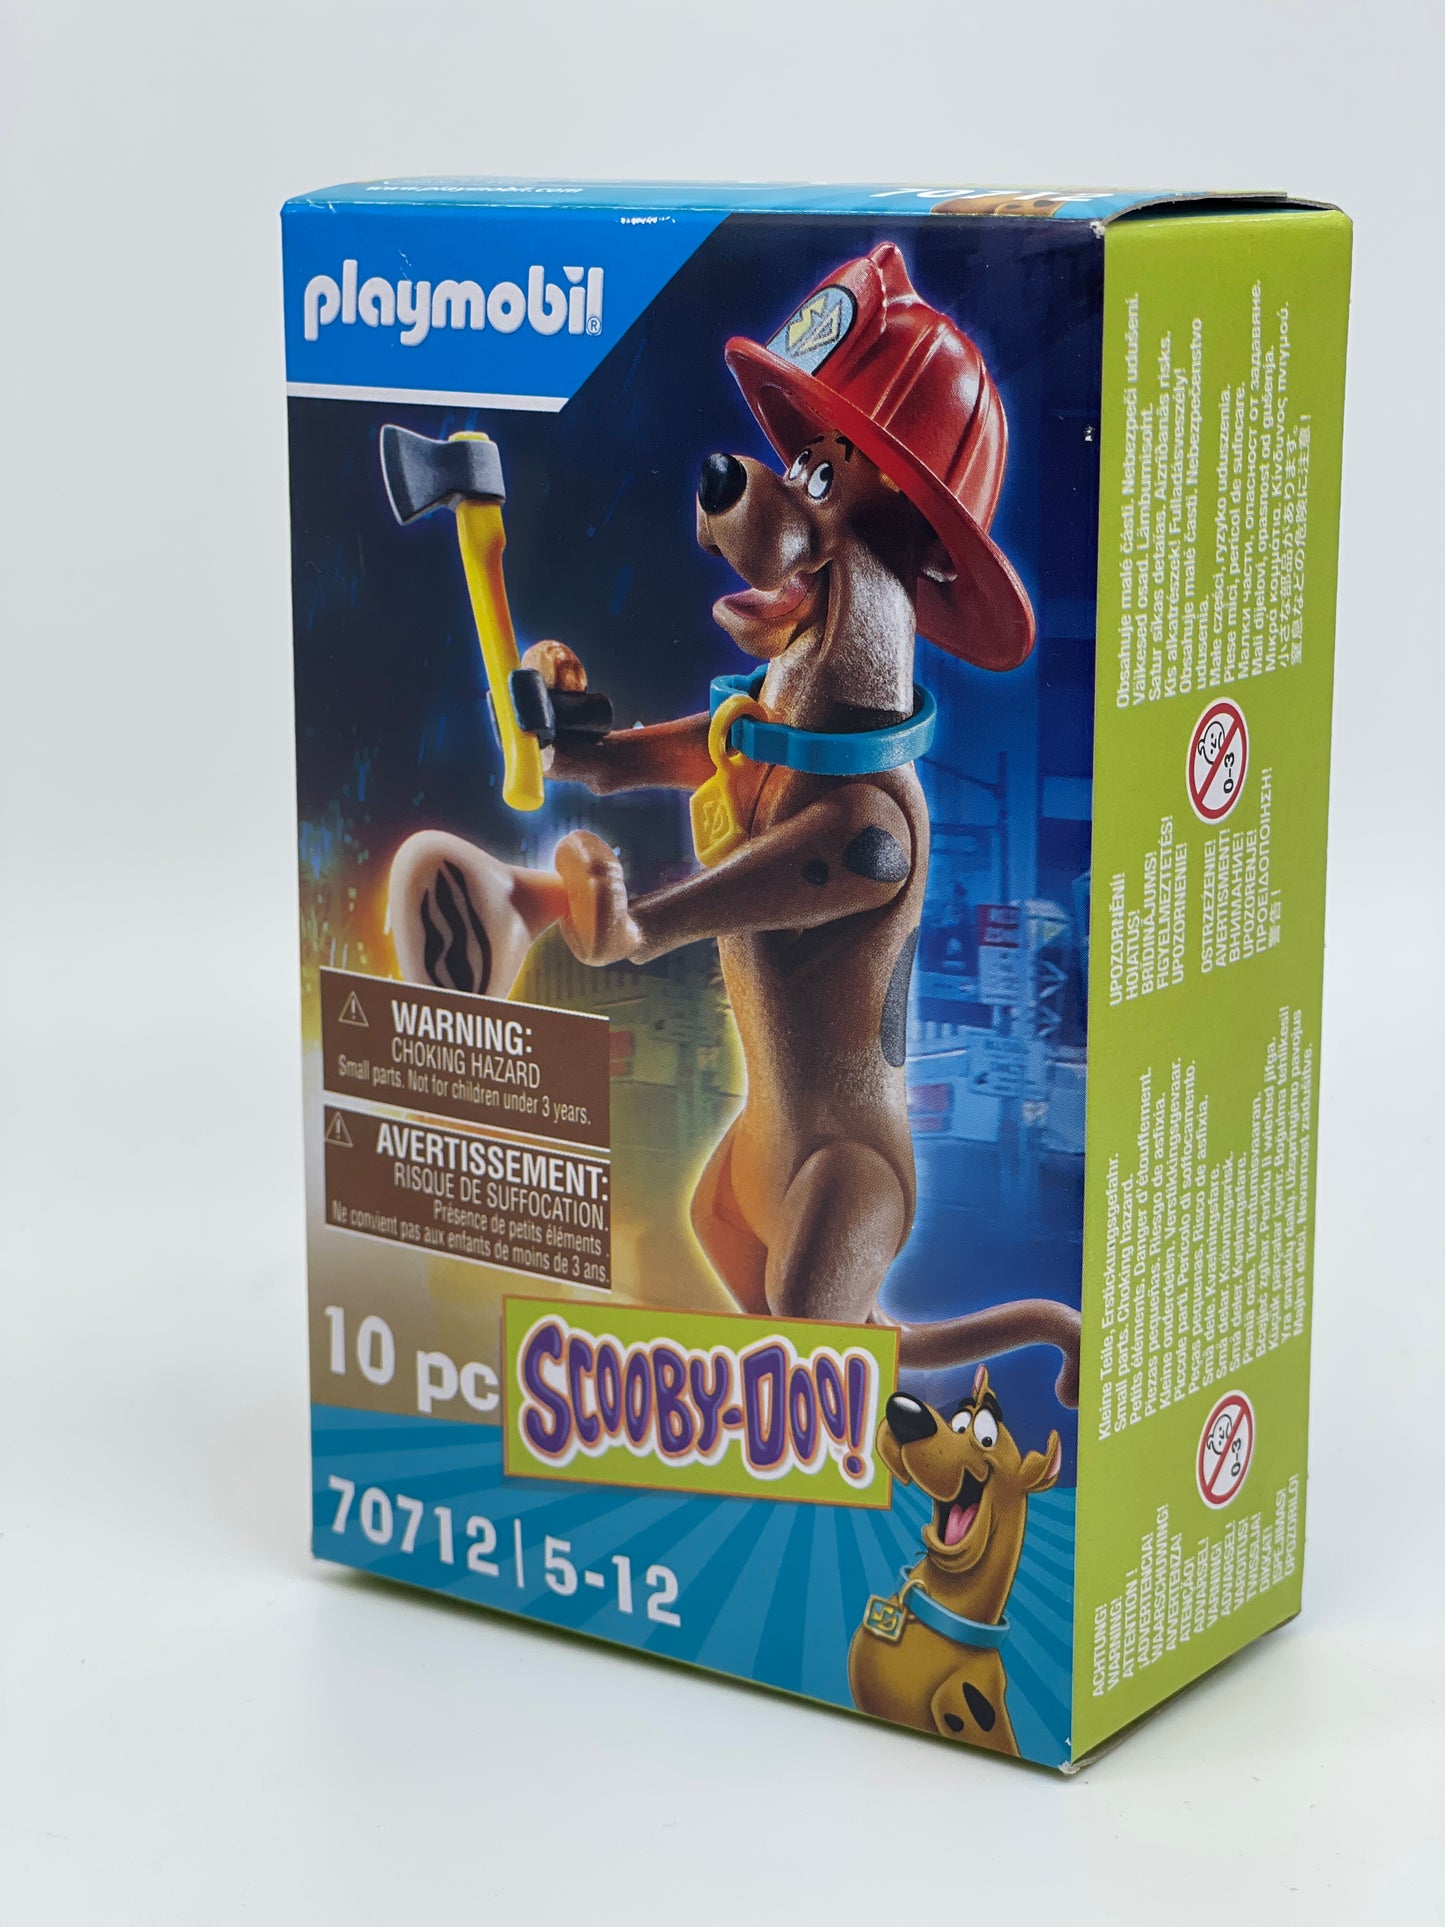 Playmobil "Feuerwehrmann" Scooby Doo mit Zubehör 70712 (2021)